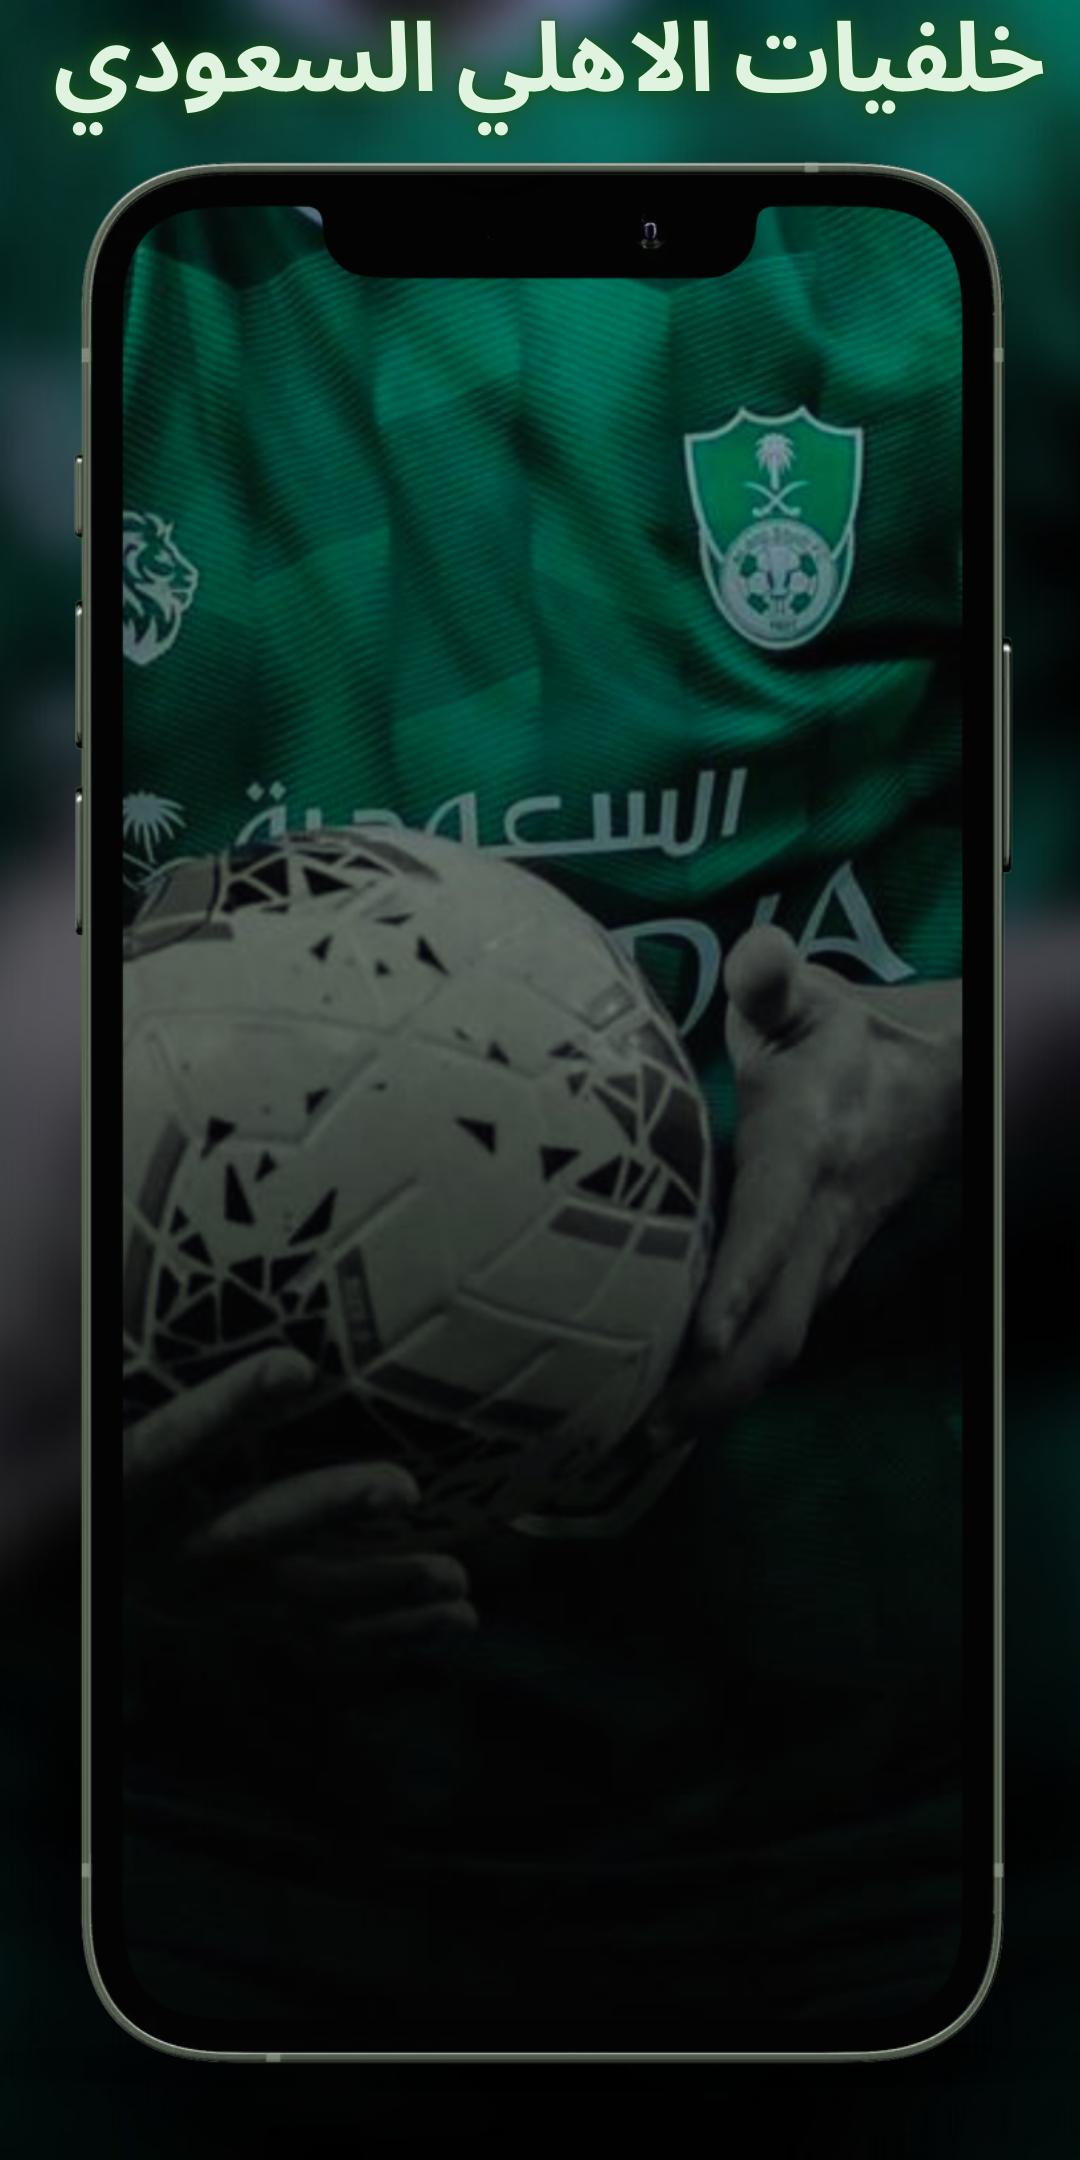 النادي الأهلي السعودي خلفيات و أهازيج 2021 APK für Android herunterladen